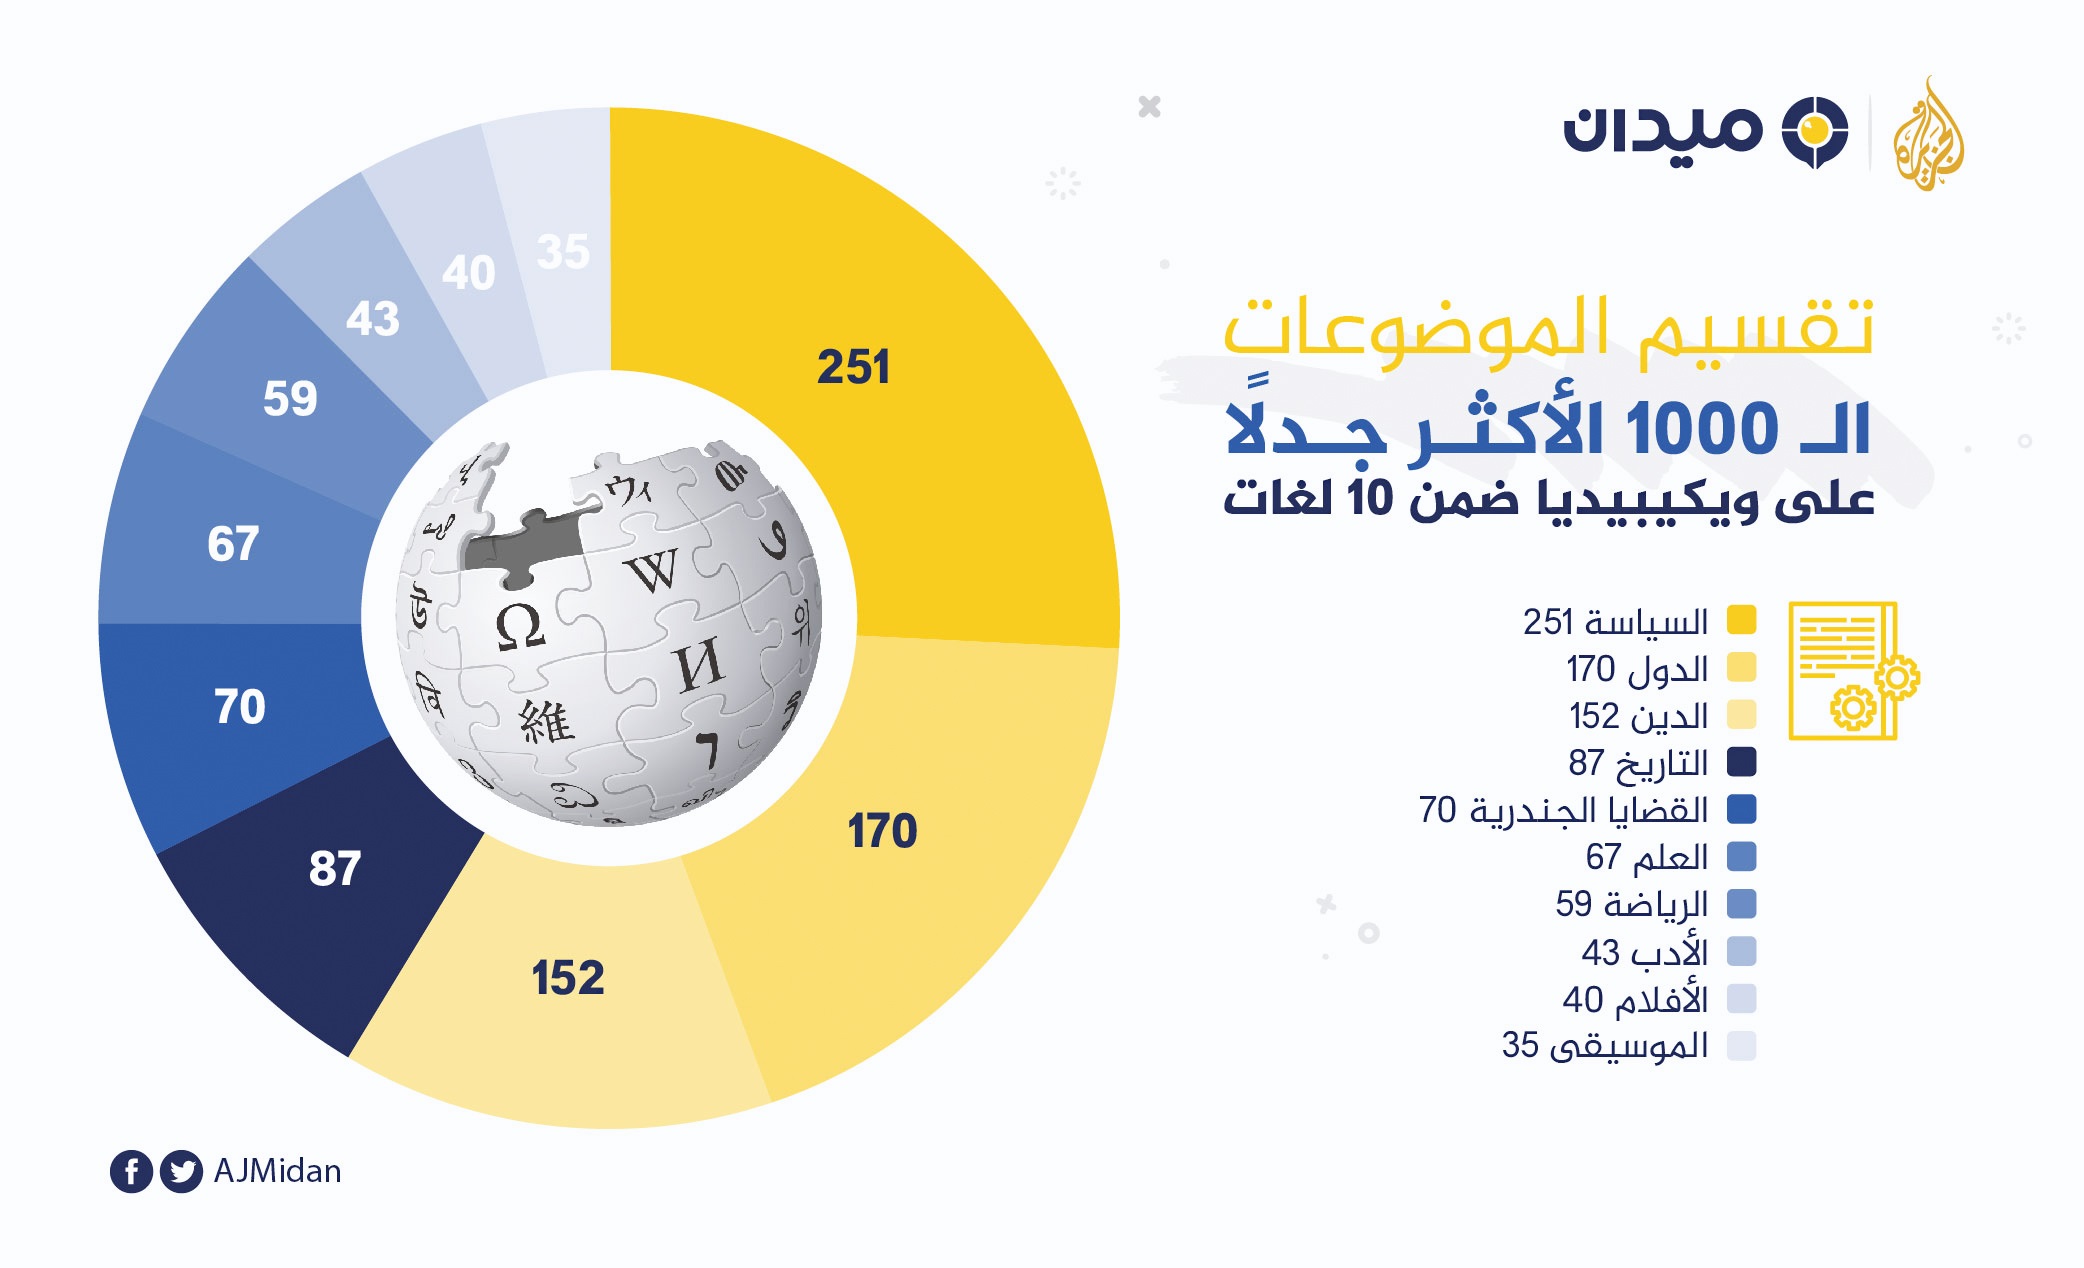 تقسيم الموضوعات الـ 1000 الأكثر جدلا على ويكيبيديا ضمن 10 لغات منها العربية